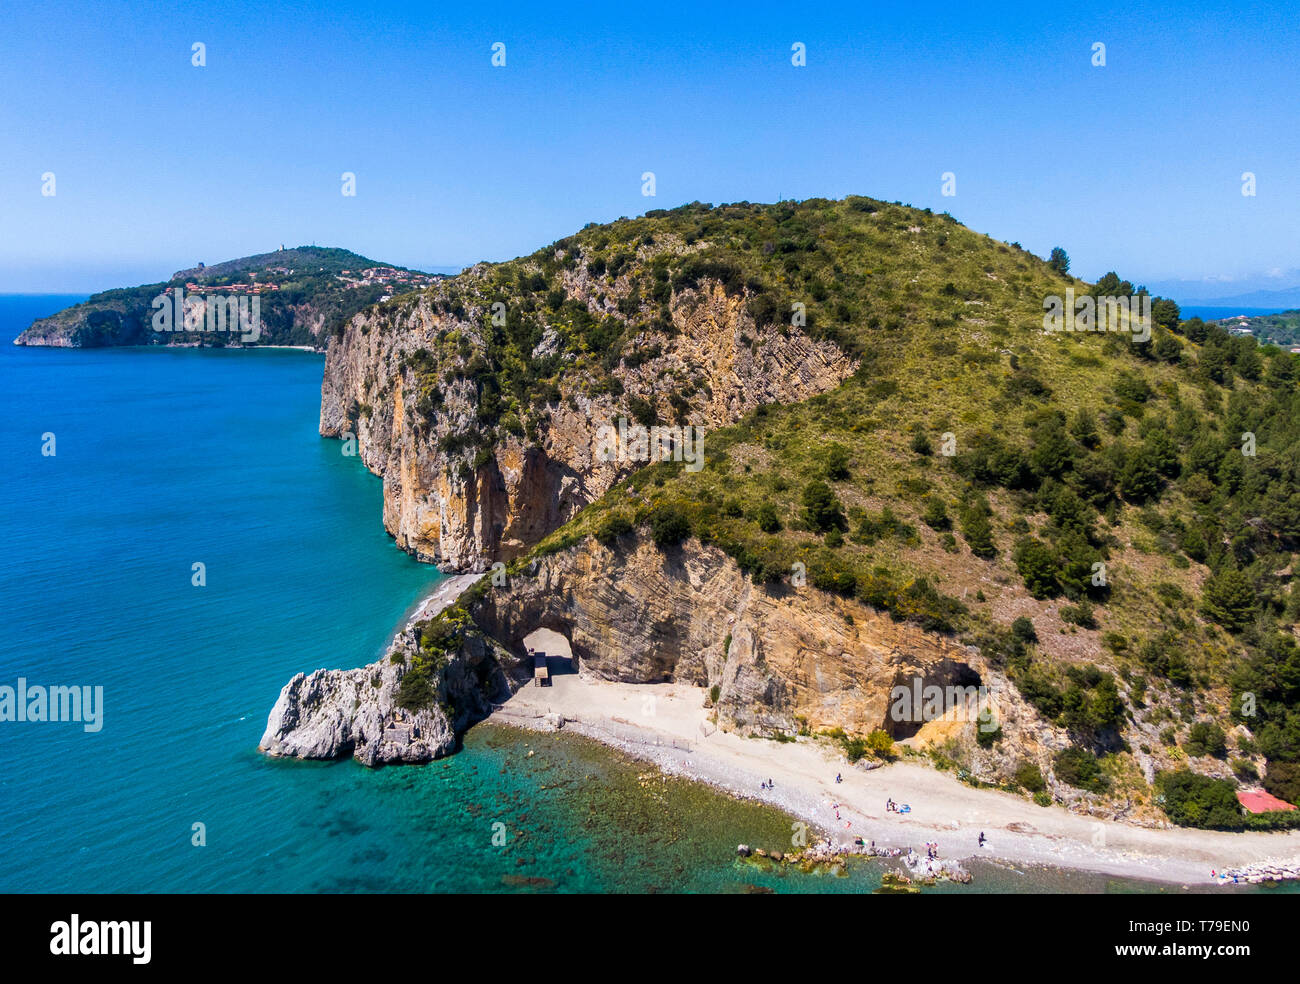 Vue aérienne de Palinuro côte et arche naturelle, Campanie, Italie Banque D'Images